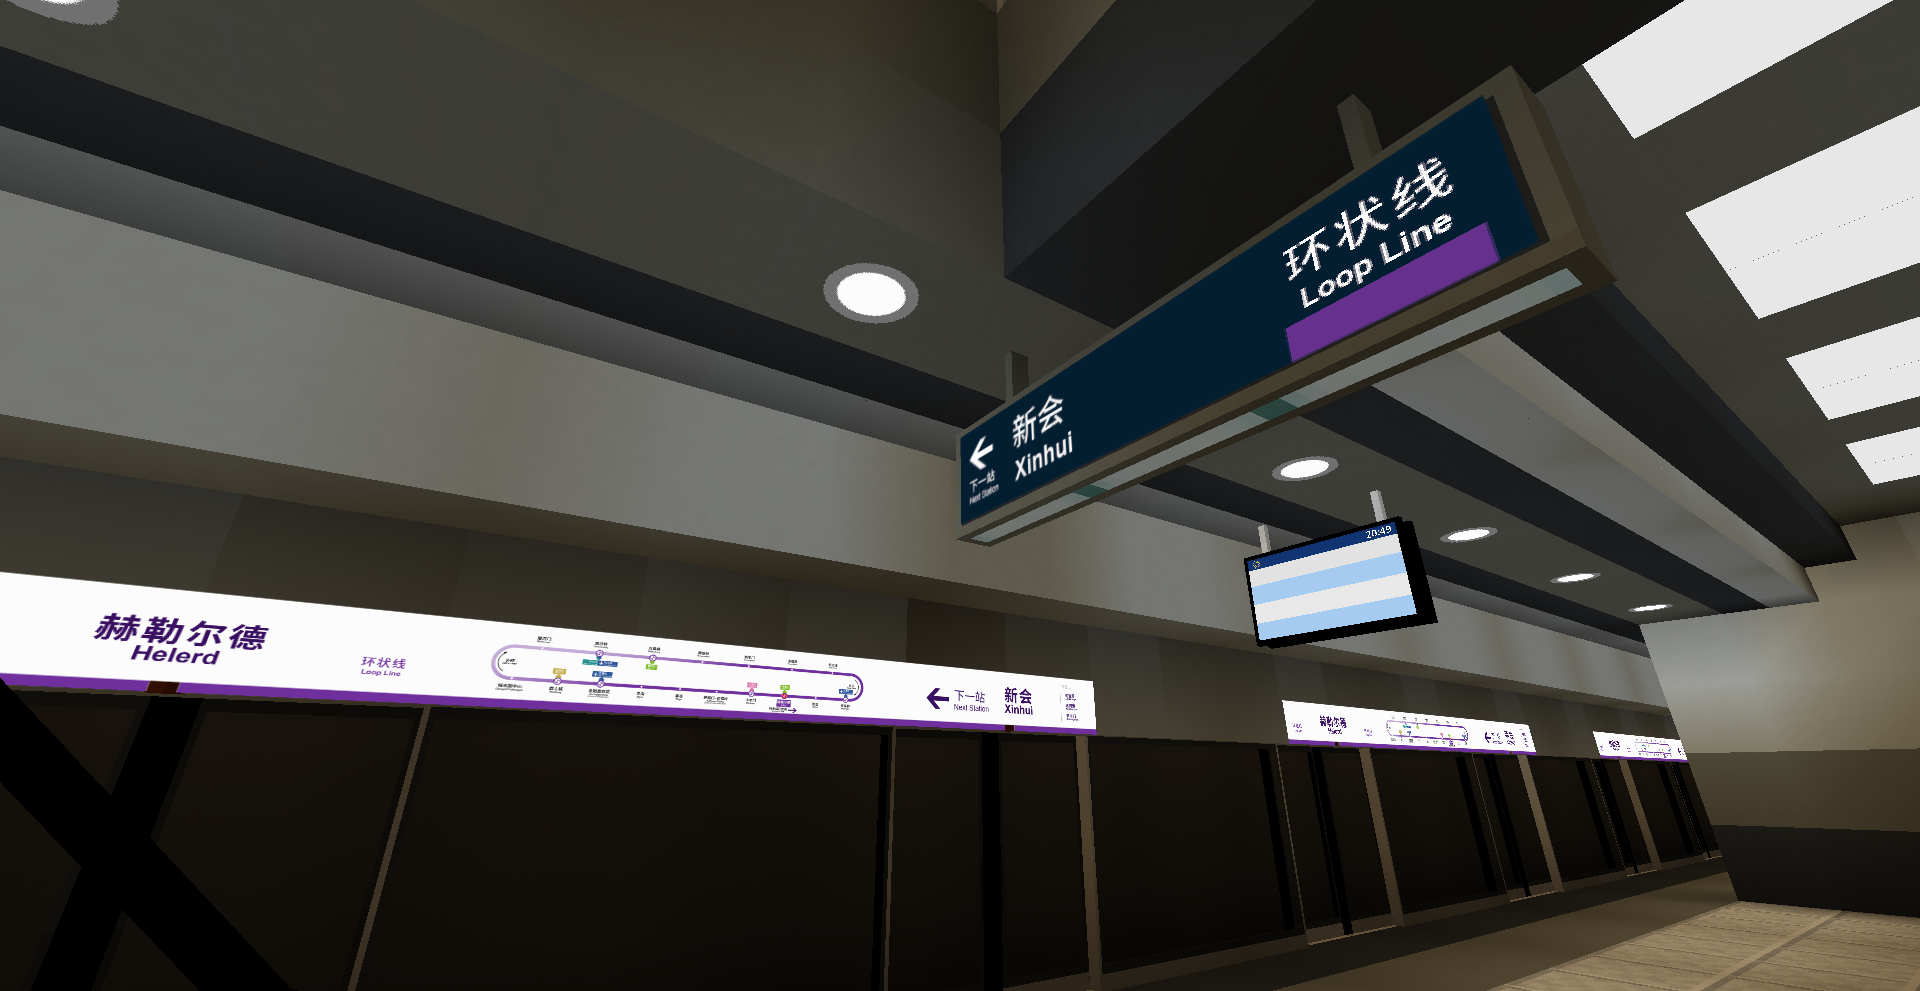 北港地铁2.0项目在赫勒尔德站的试点